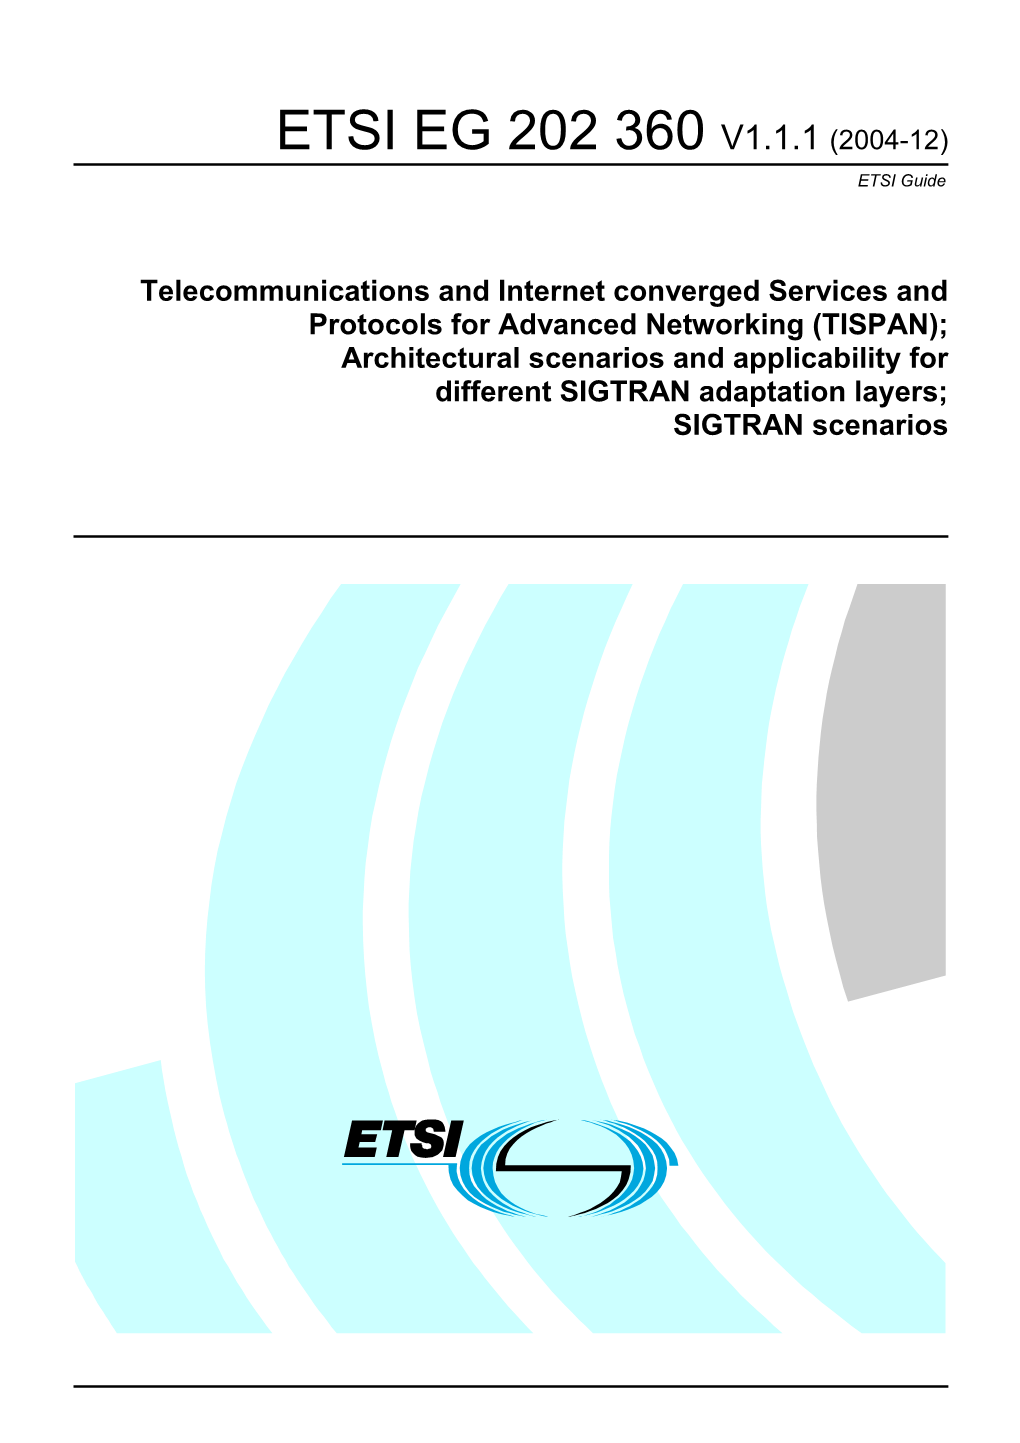 EG 202 360 V1.1.1 (2004-12) ETSI Guide